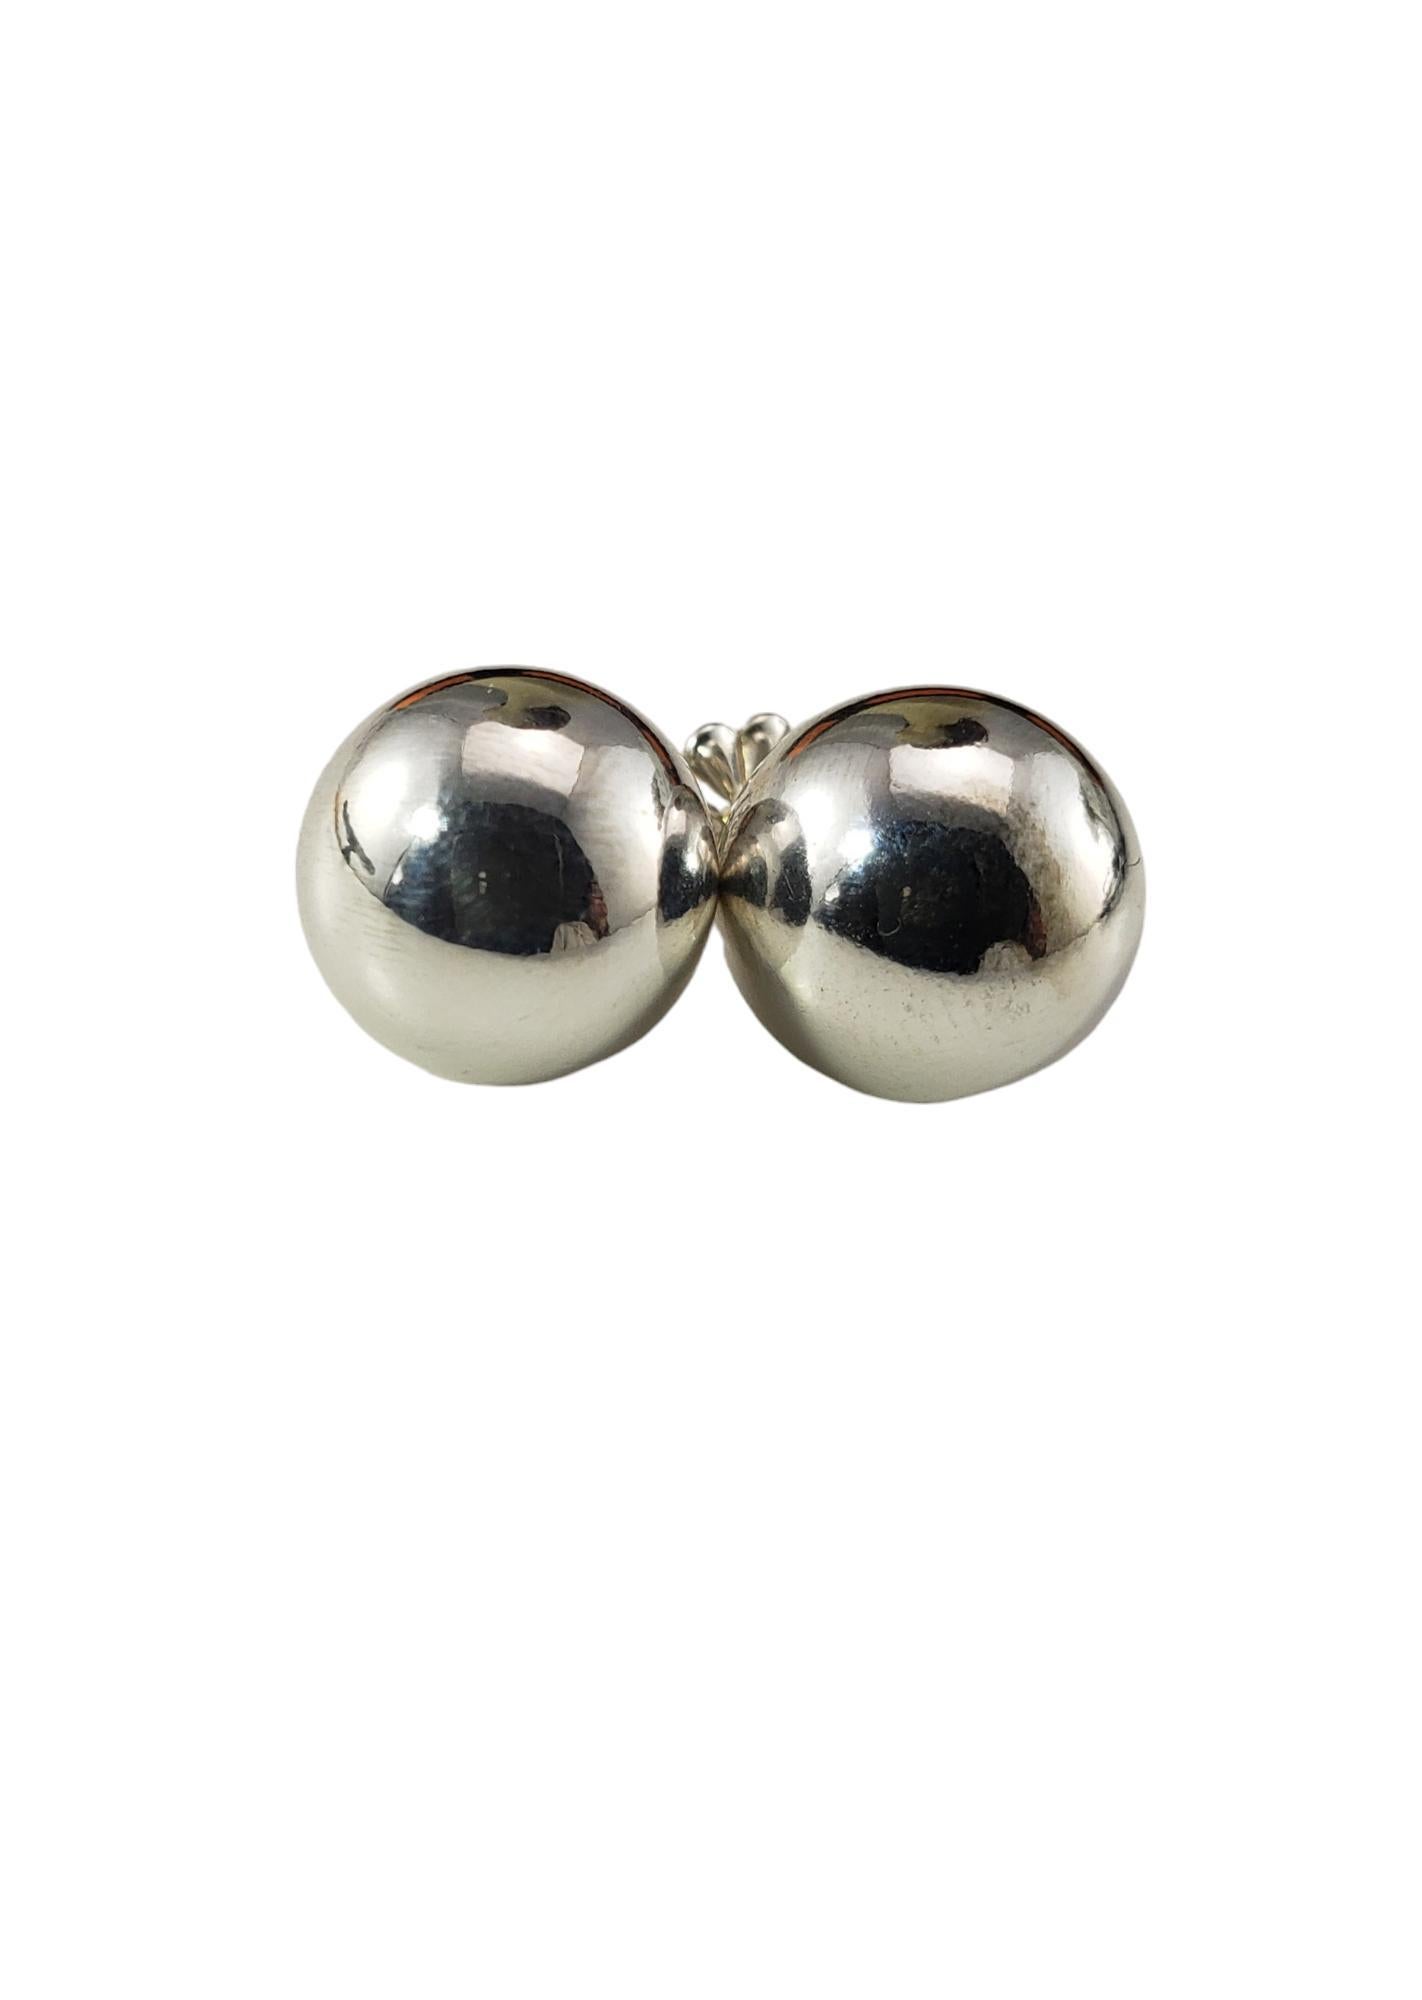 Tiffany & Co. Boucles d'oreilles boule en argent

Ces élégantes boucles d'oreilles boules de Tiffany & Co. sont fabriquées en argent sterling classique.  

Largeur : 10 mm.  Fermetures à l'arrière.

Bracelet assorti : #17162
Collier assorti :